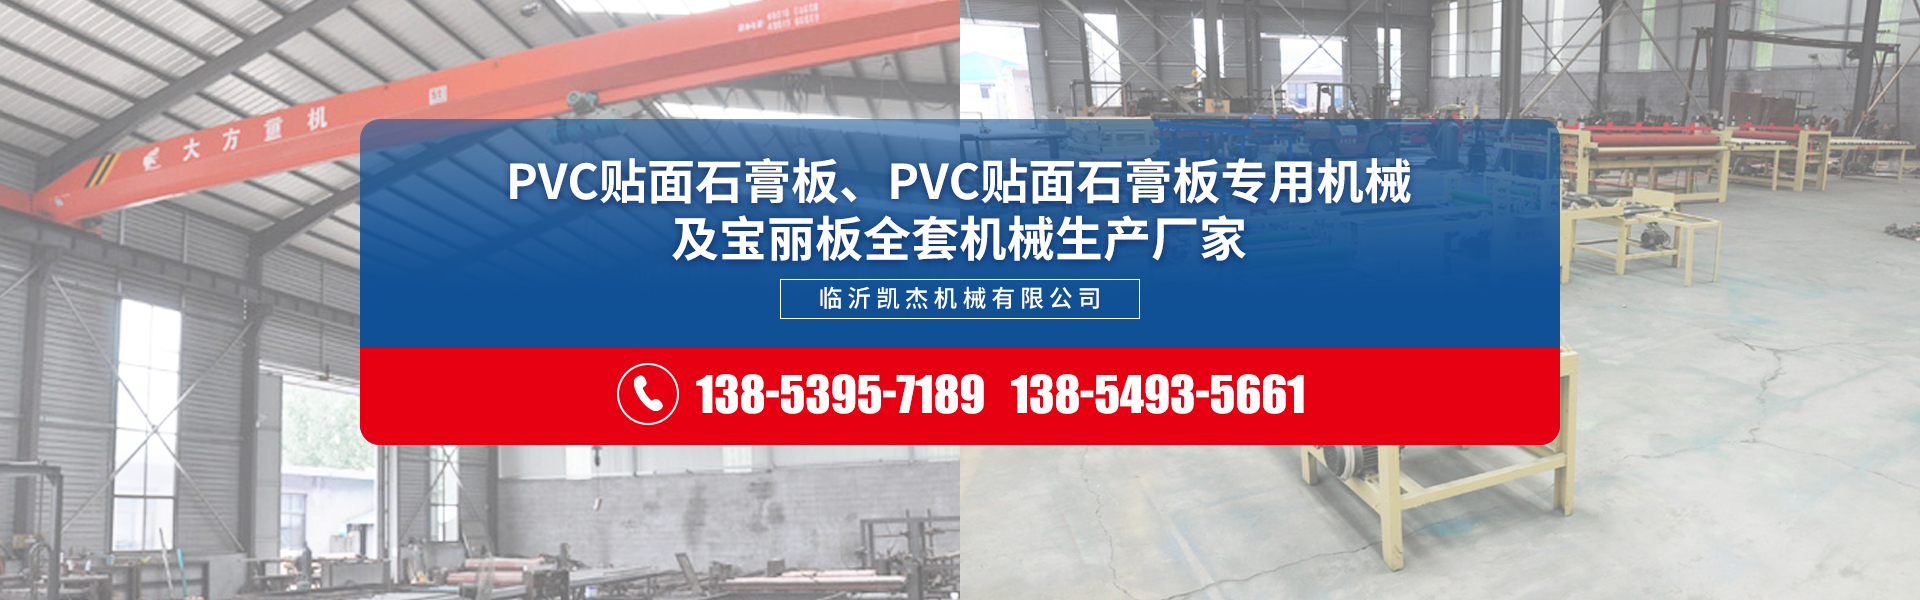 双面贴面机生产厂家,pvc石膏板塑封机厂家,pvc石膏板包边机,pvc石膏板自动包装机